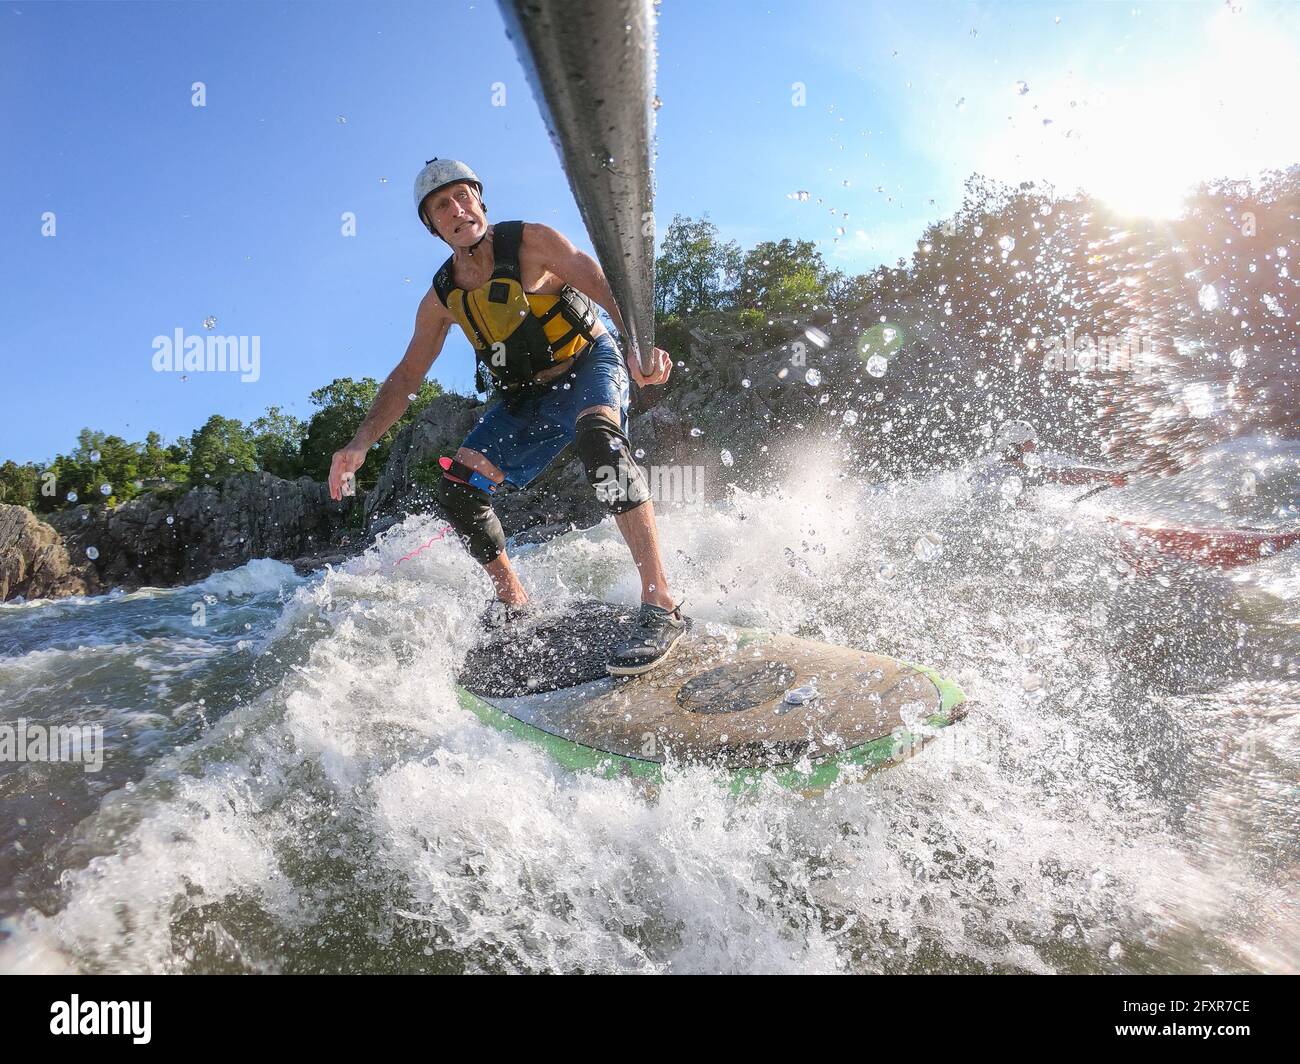 Fotógrafo Skip Brown stand up paddle surfes desafiantes aguas blancas debajo de las Great Falls del río Potomac, frontera de Virginia y Maryland, Estados Unidos Foto de stock